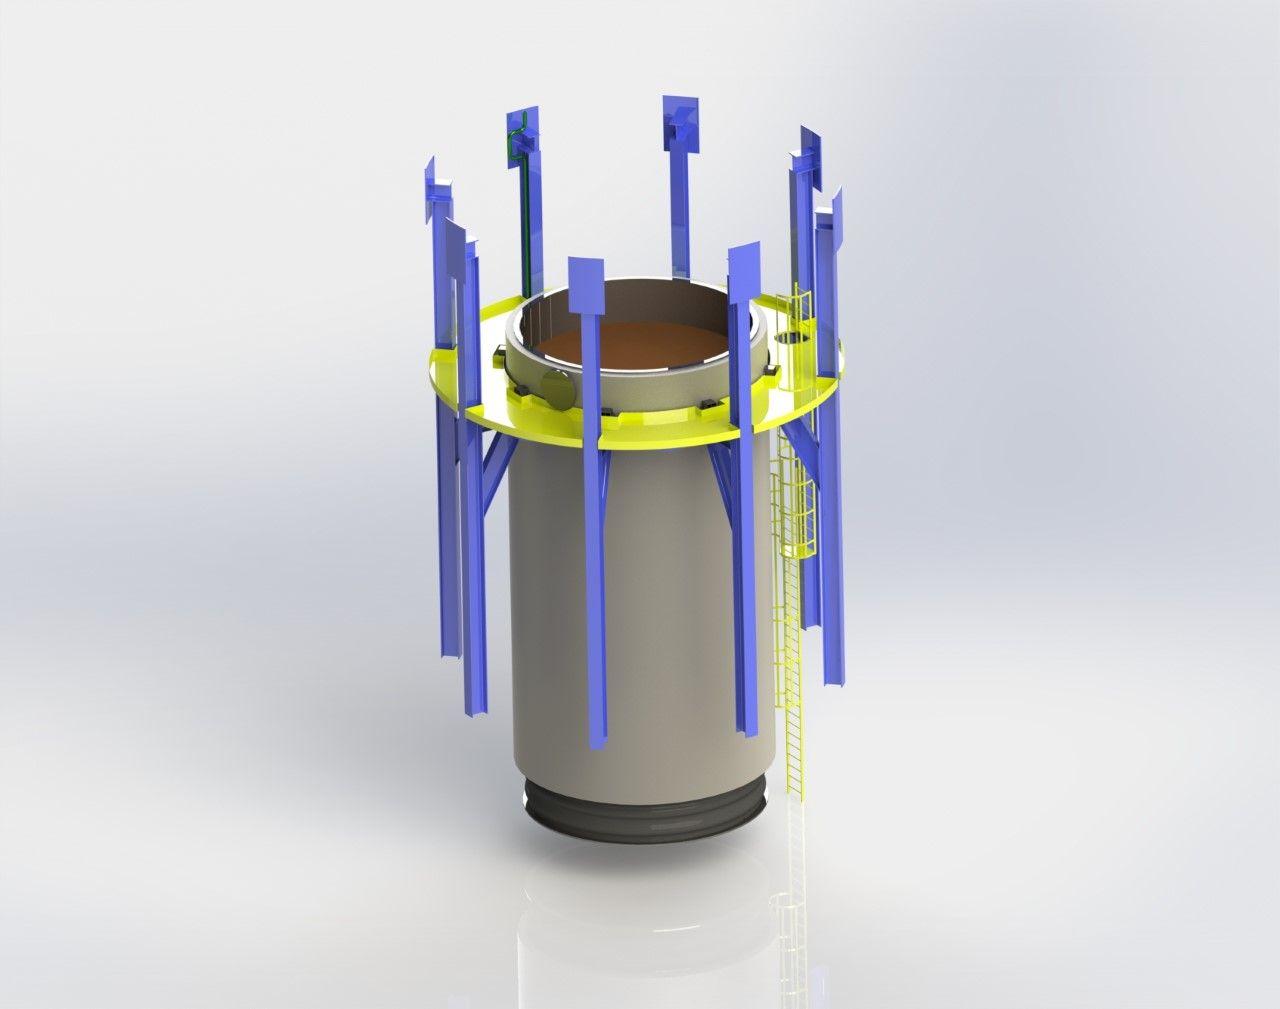 Разработана технология хранения энергии сжатого воздуха с использованием системы хранения тепловой энергии (TES), встроенной в заброшенный шахтный ствол